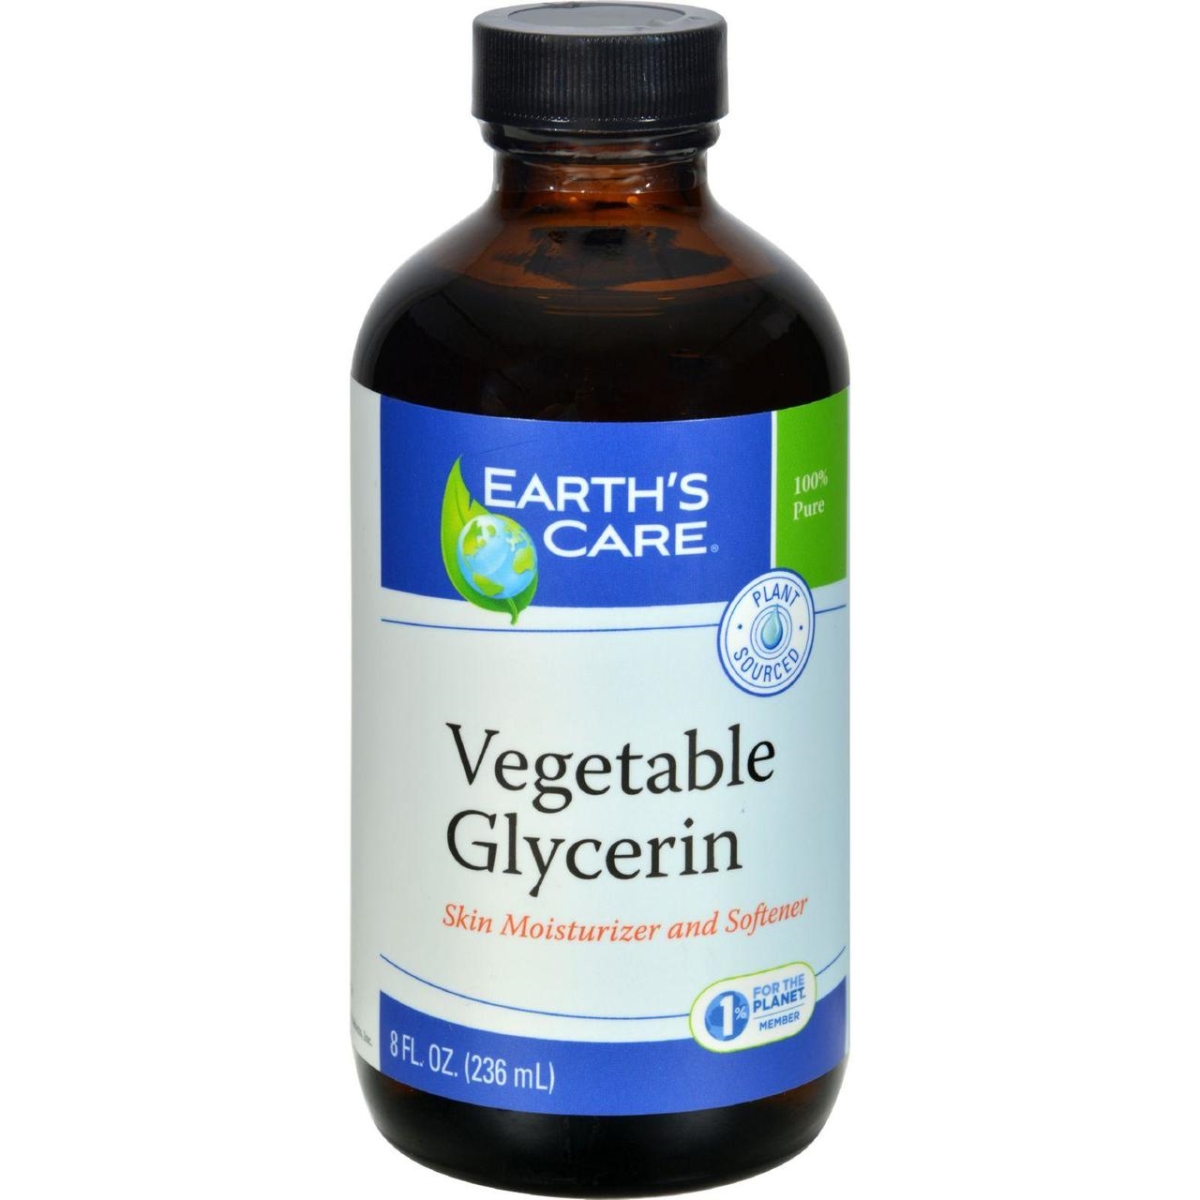 Hg1216225 8 Fl Oz 100 Percent Natural Vegan Glycerin